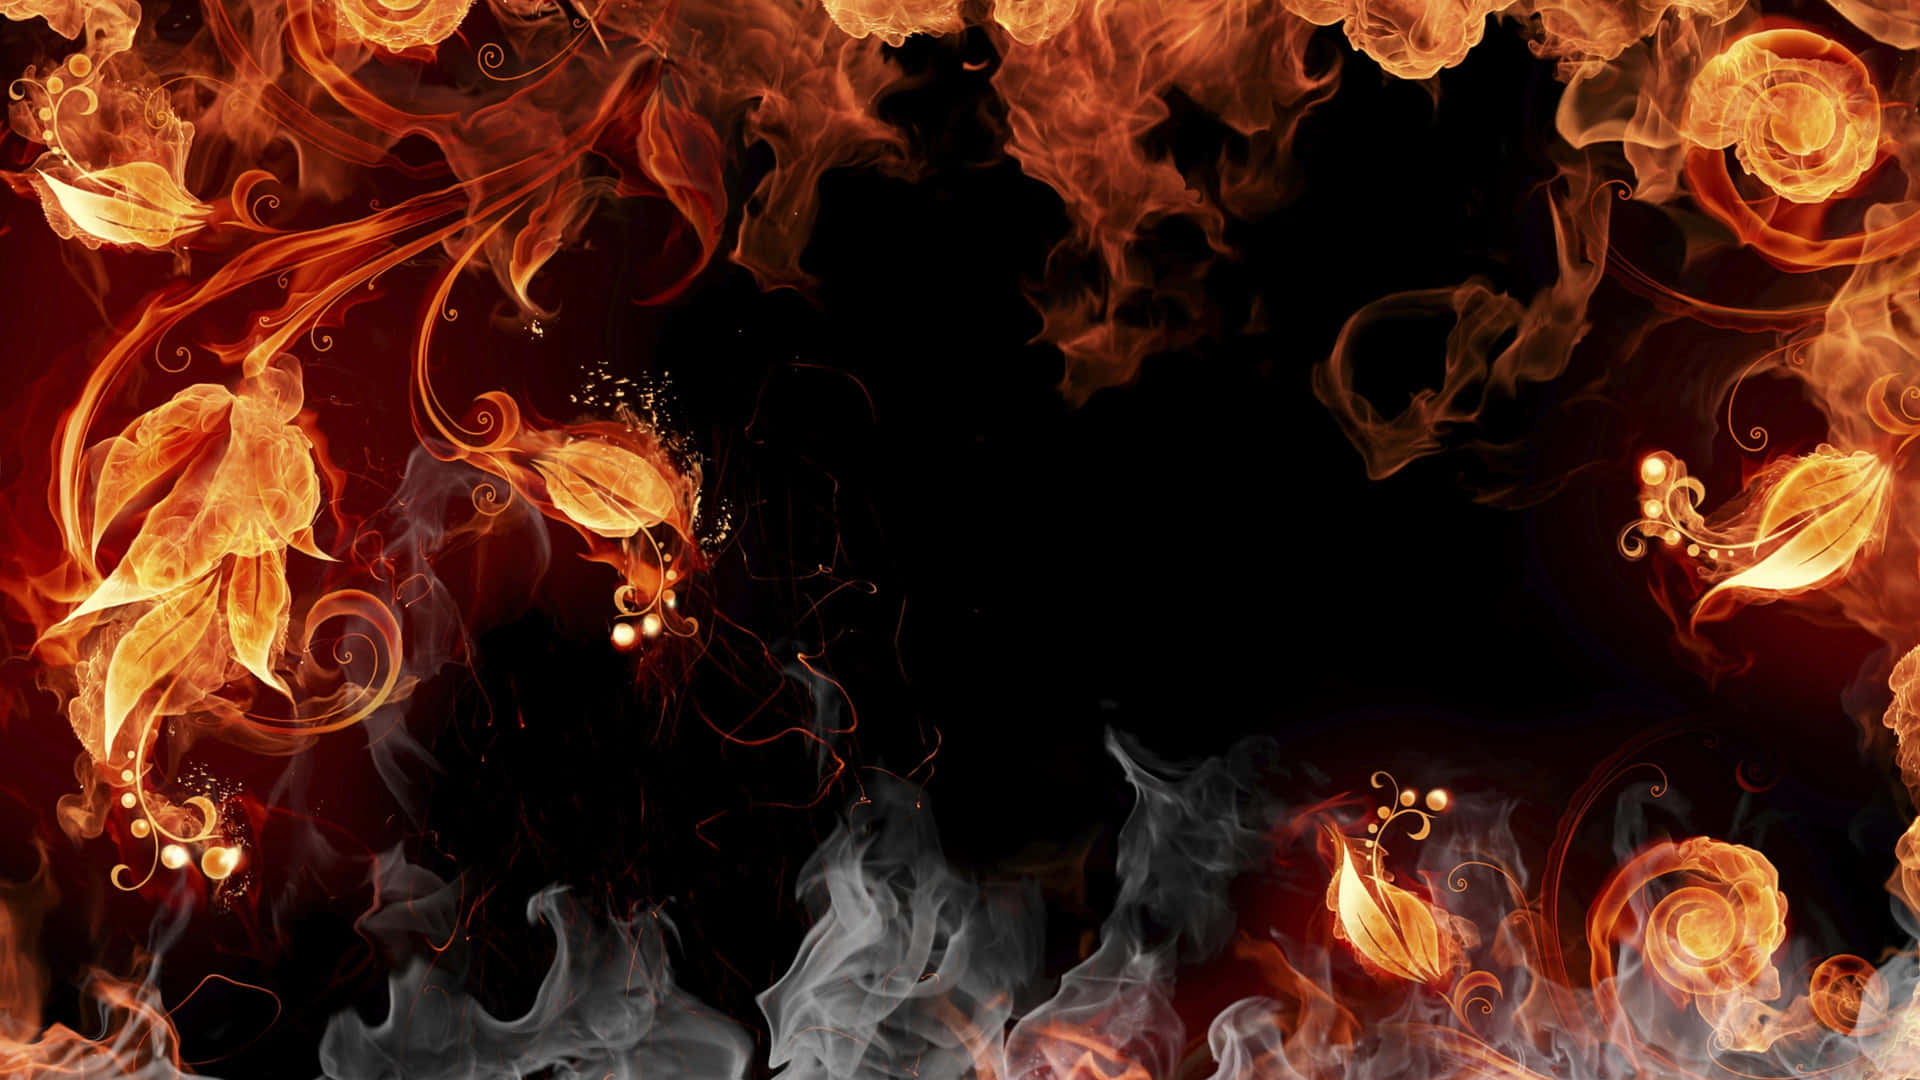 Abstract_ Fire_ Dance.jpg Wallpaper